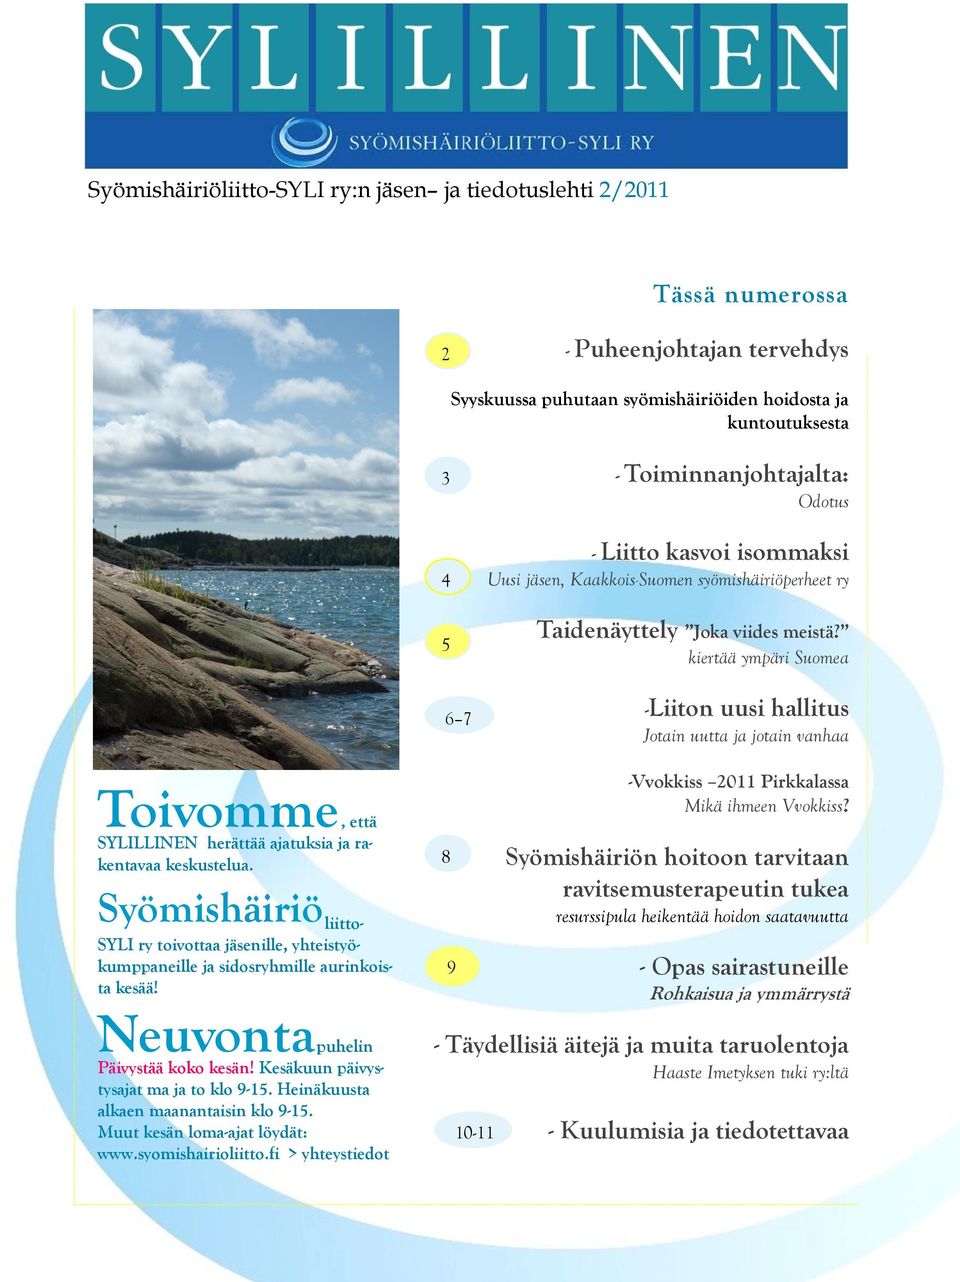 kiertää ympäri Suomea -Liiton uusi hallitus Jotain uutta ja jotain vanhaa Toivomme, että SYLILLINEN herättää ajatuksia ja rakentavaa keskustelua.